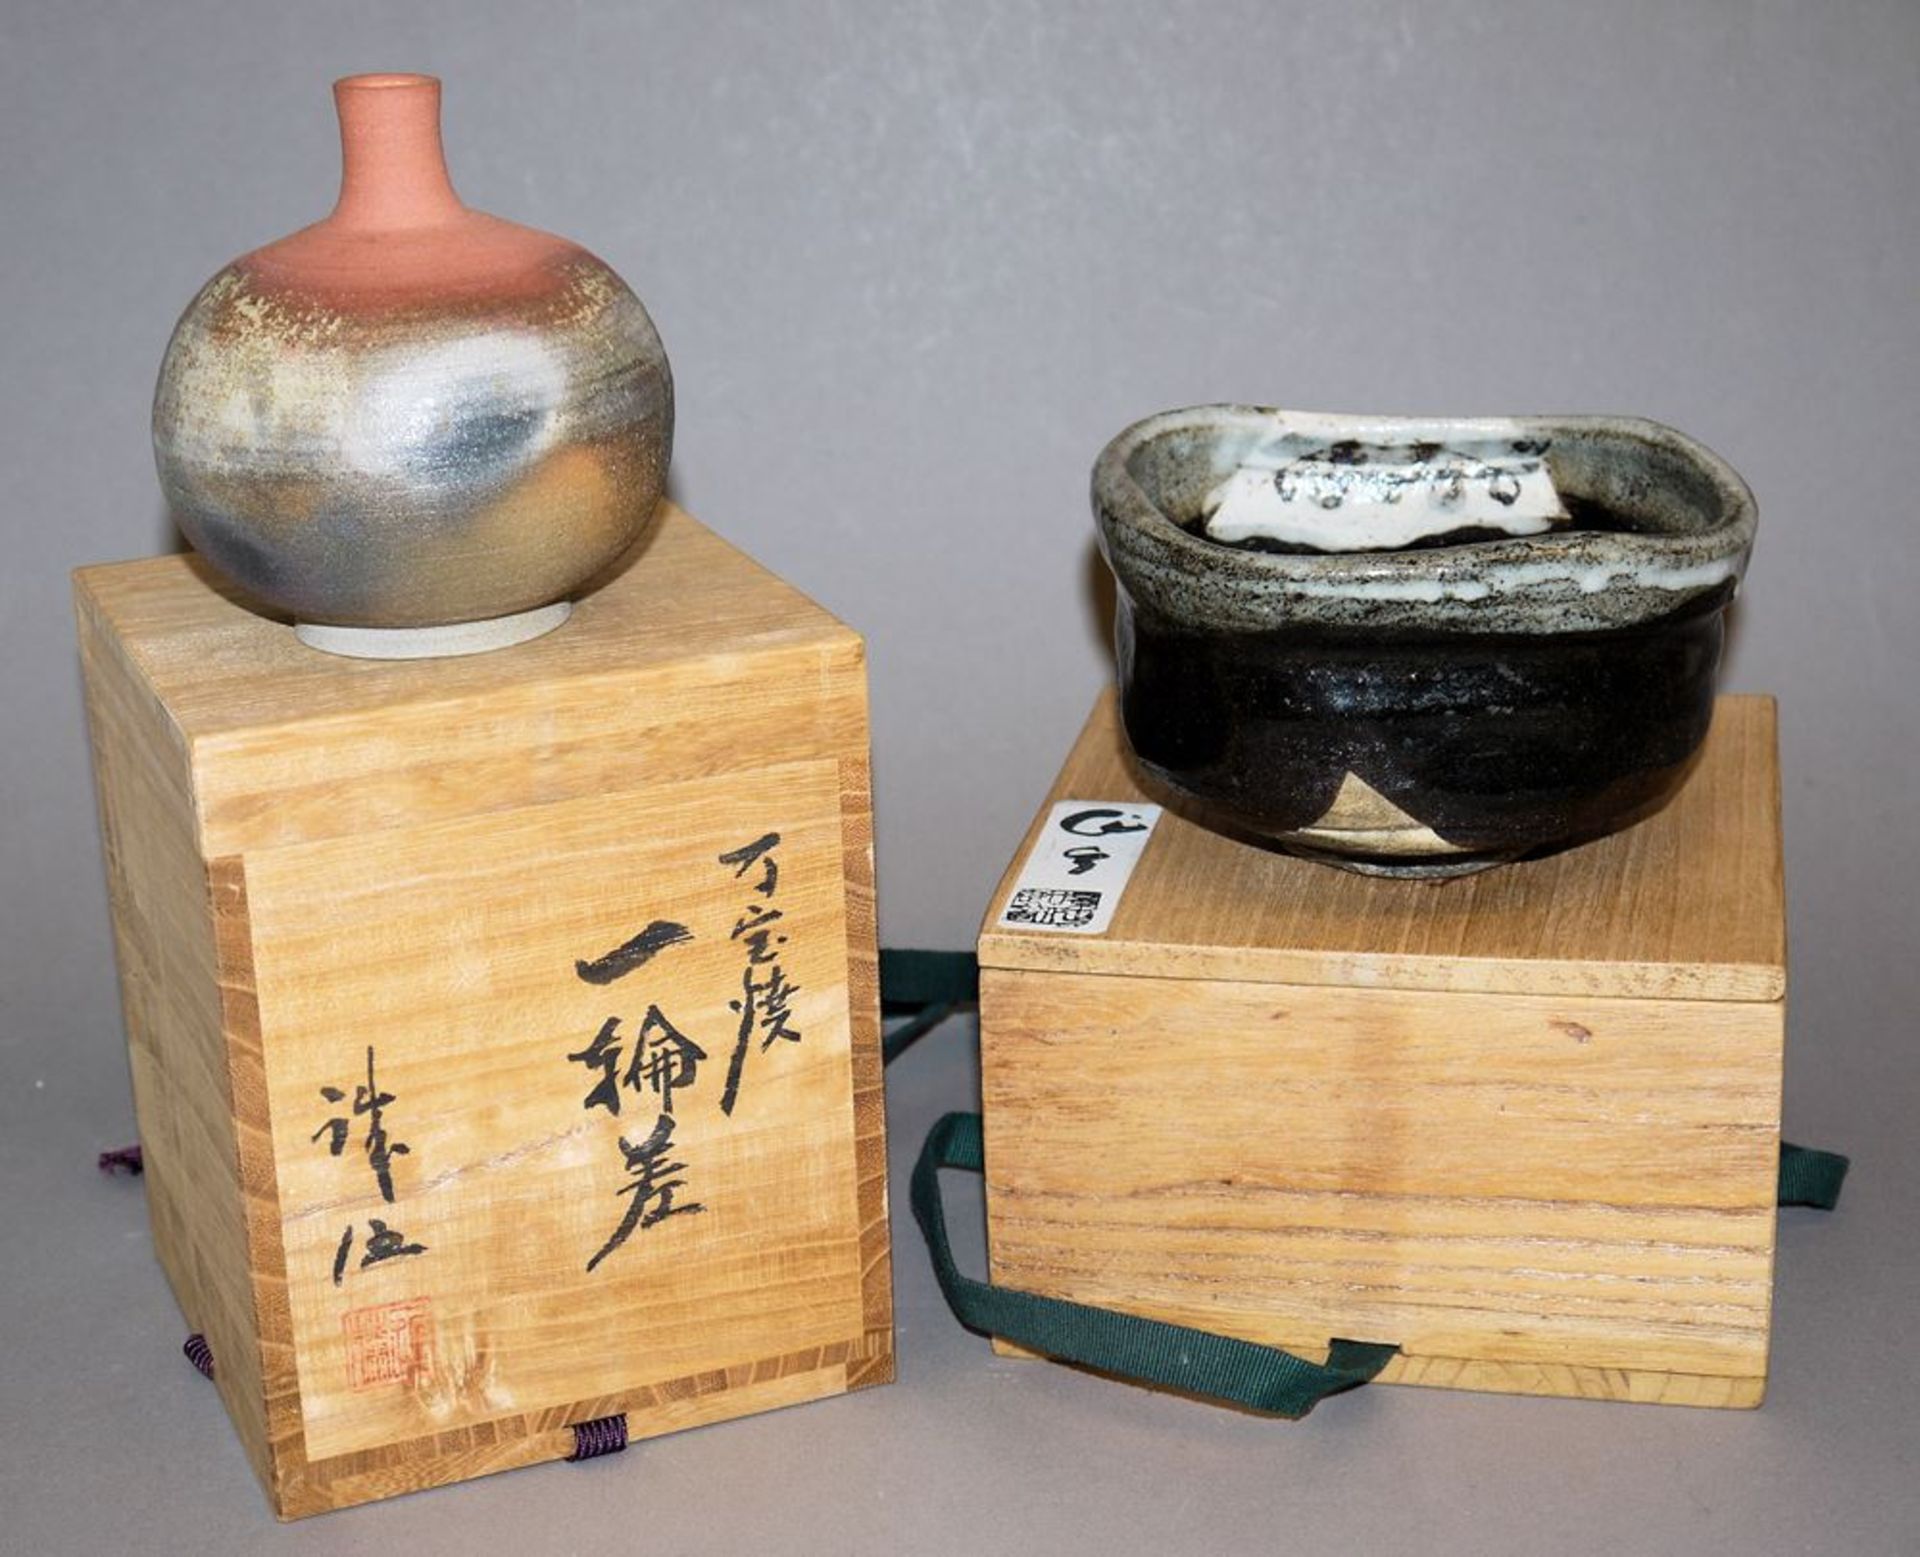 Zwei japanische Kunst-Keramiken: Vase von Seigo Kondo und Chawan von Kato Sakusuke